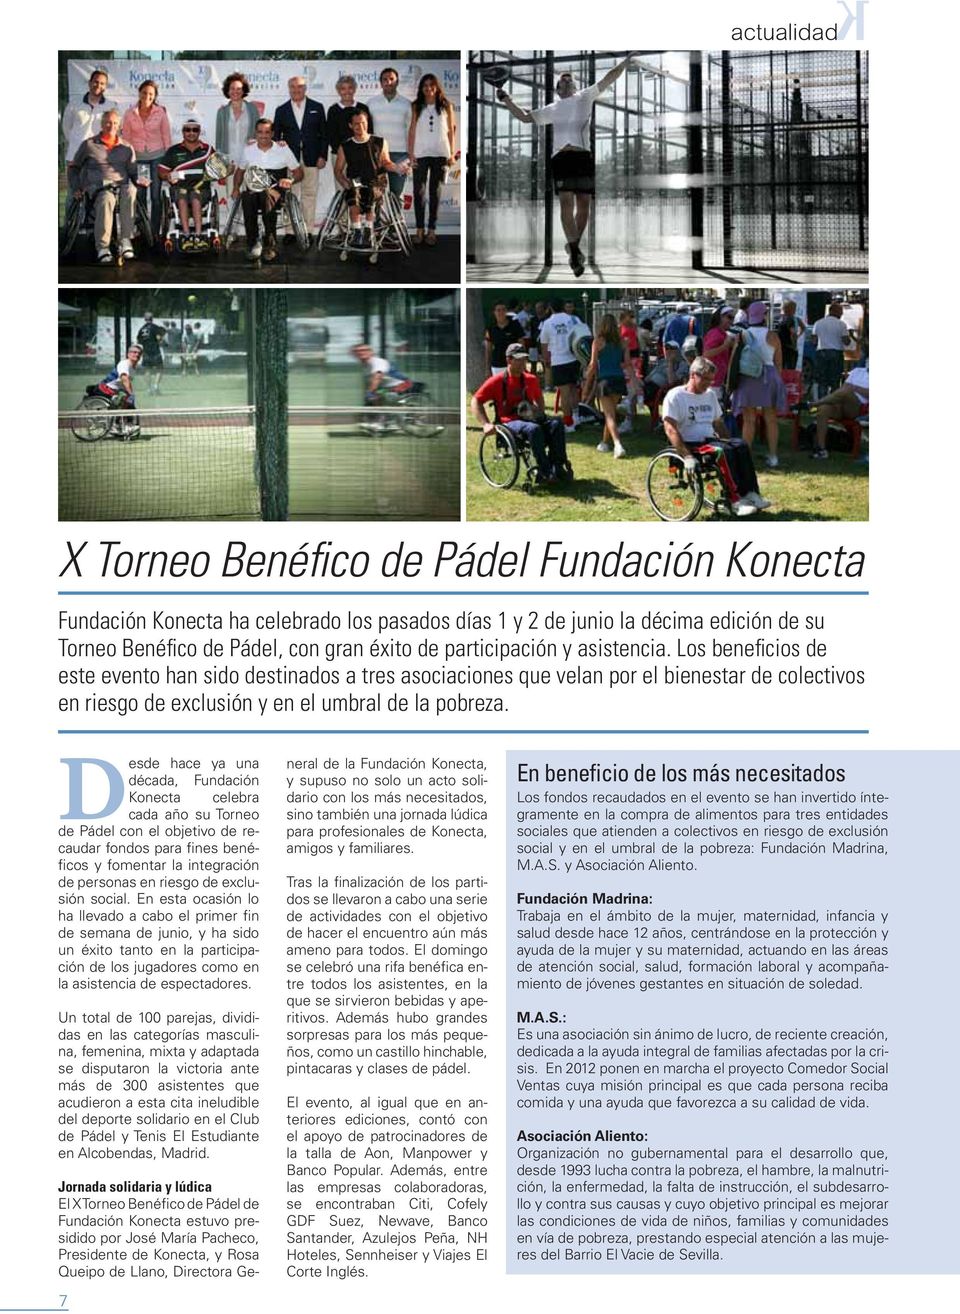 Desde hace ya una década, Fundación Konecta celebra cada año su Torneo de Pádel con el objetivo de recaudar fondos para fines benéficos y fomentar la integración de personas en riesgo de exclusión